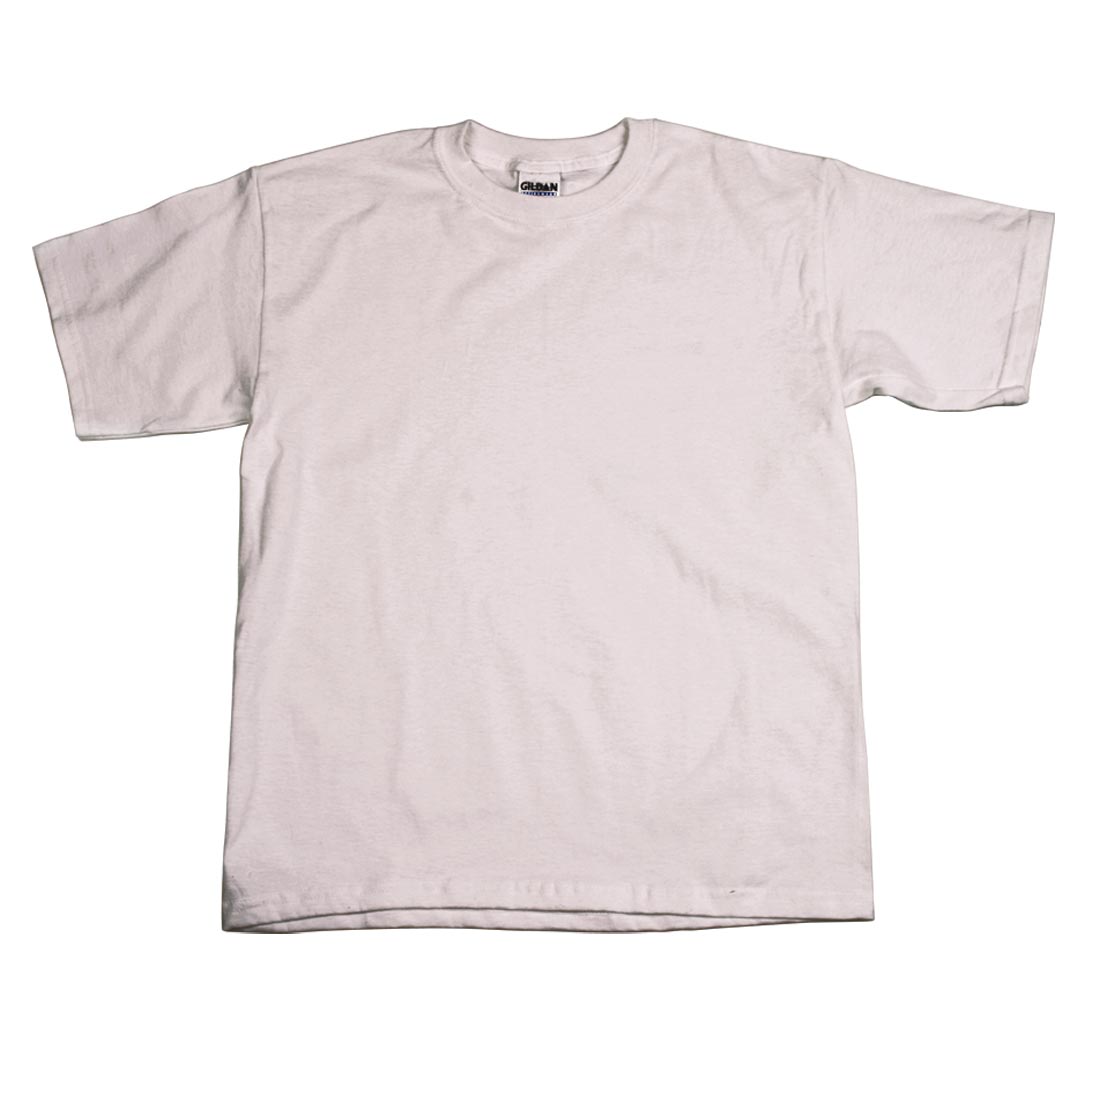 Large Plain White T-Shirt